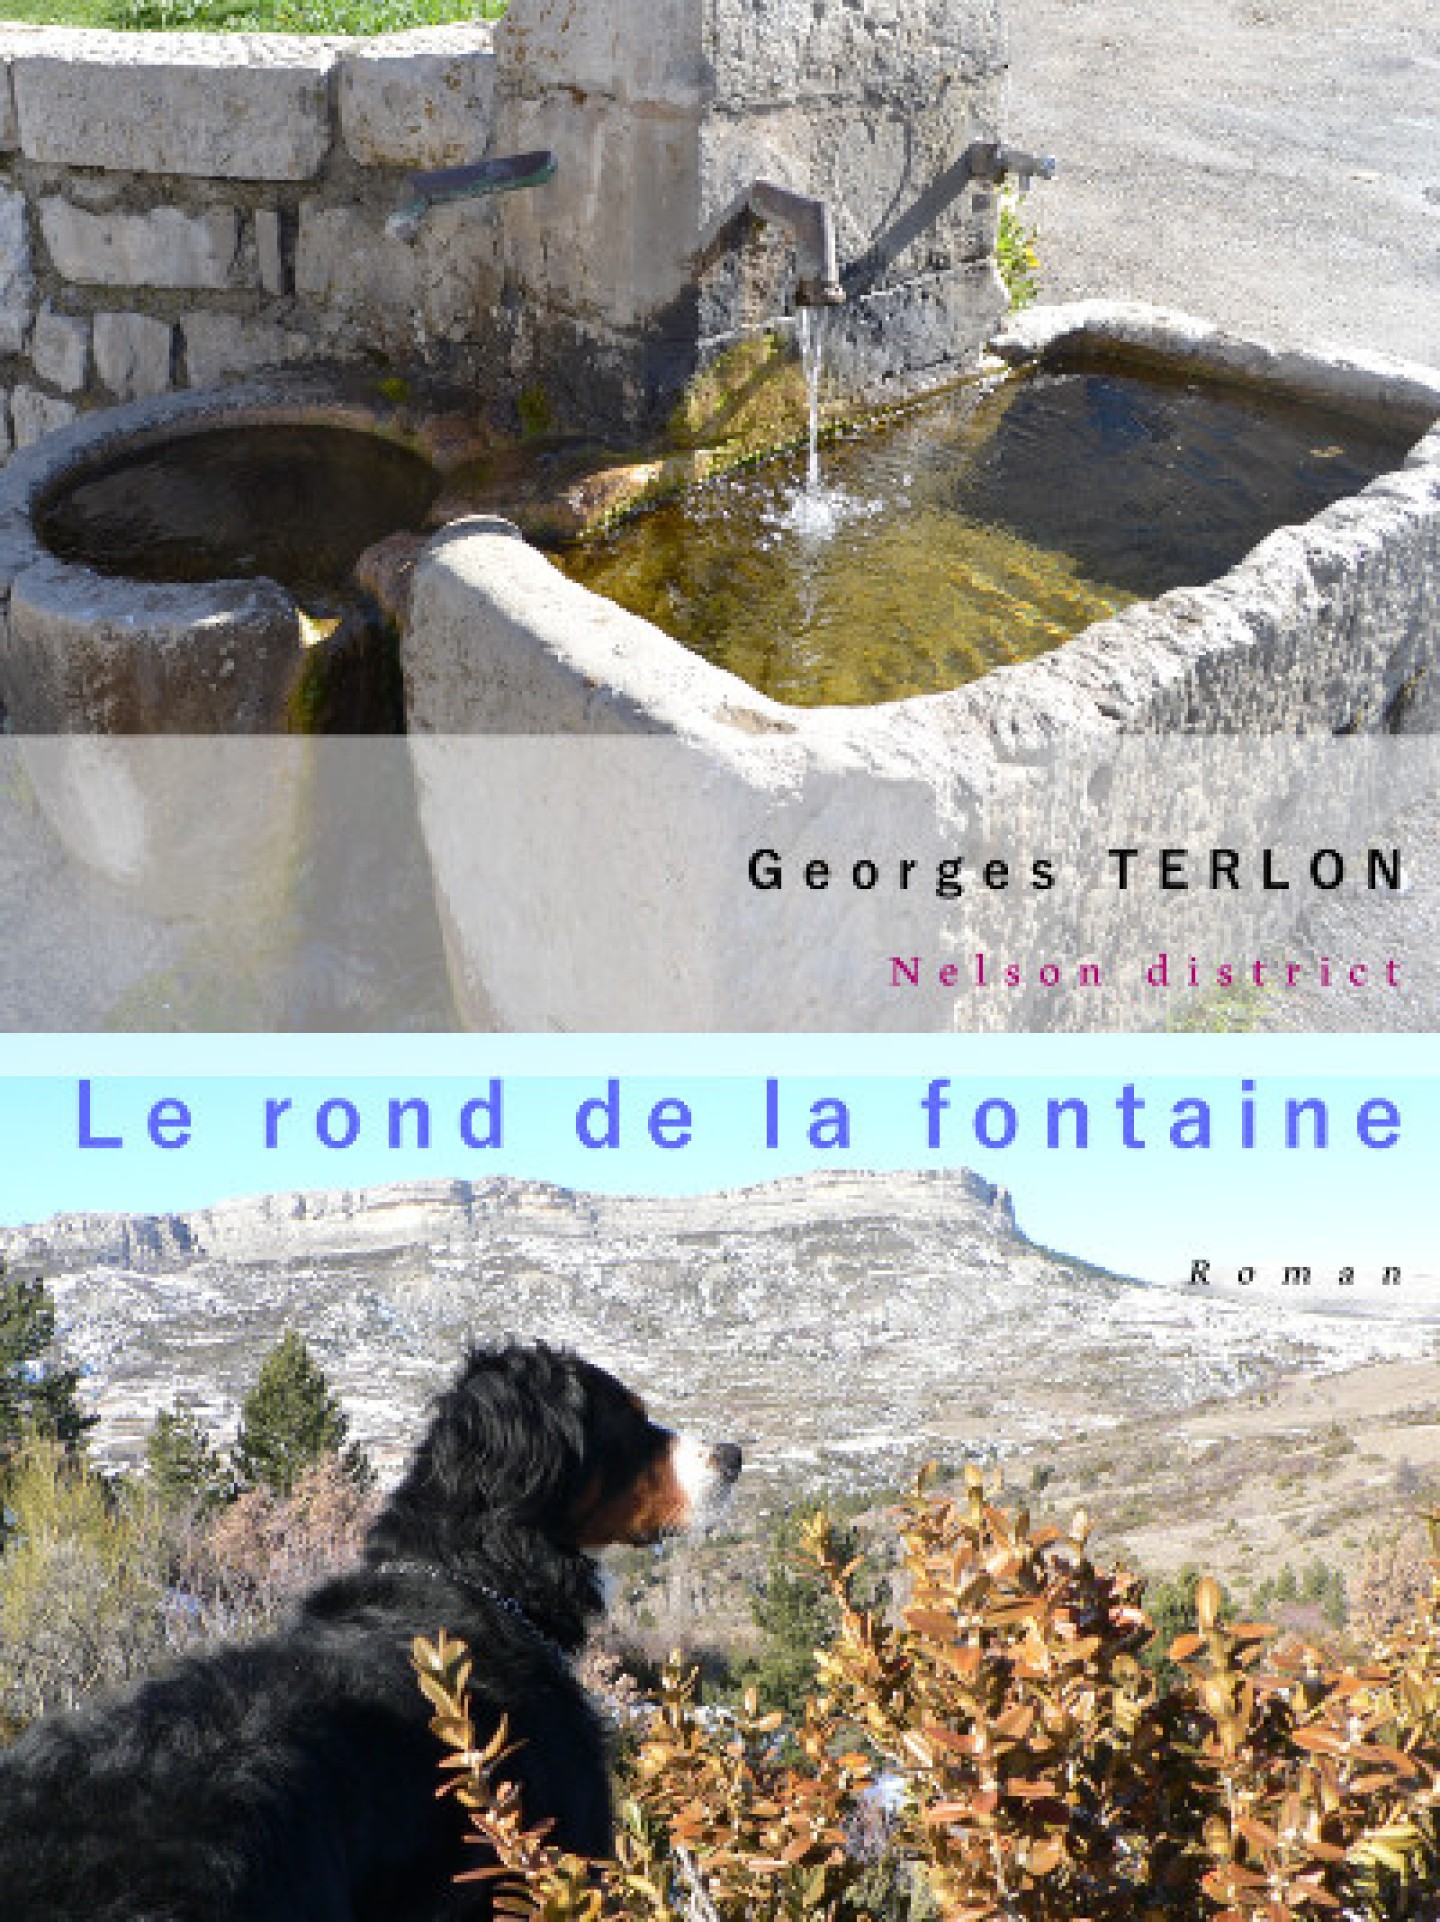 Le rond de la fontaine de Georges Terlon